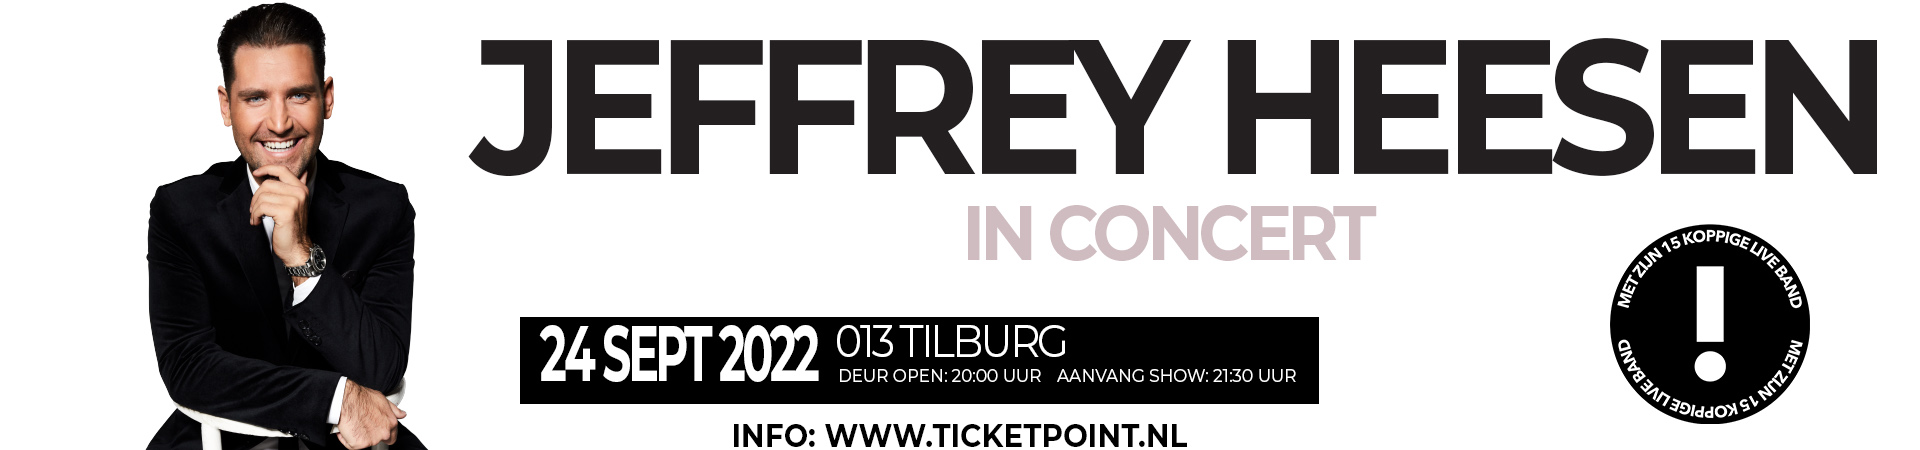 Jeffrey Heesen Live in Concert 013 - tickets